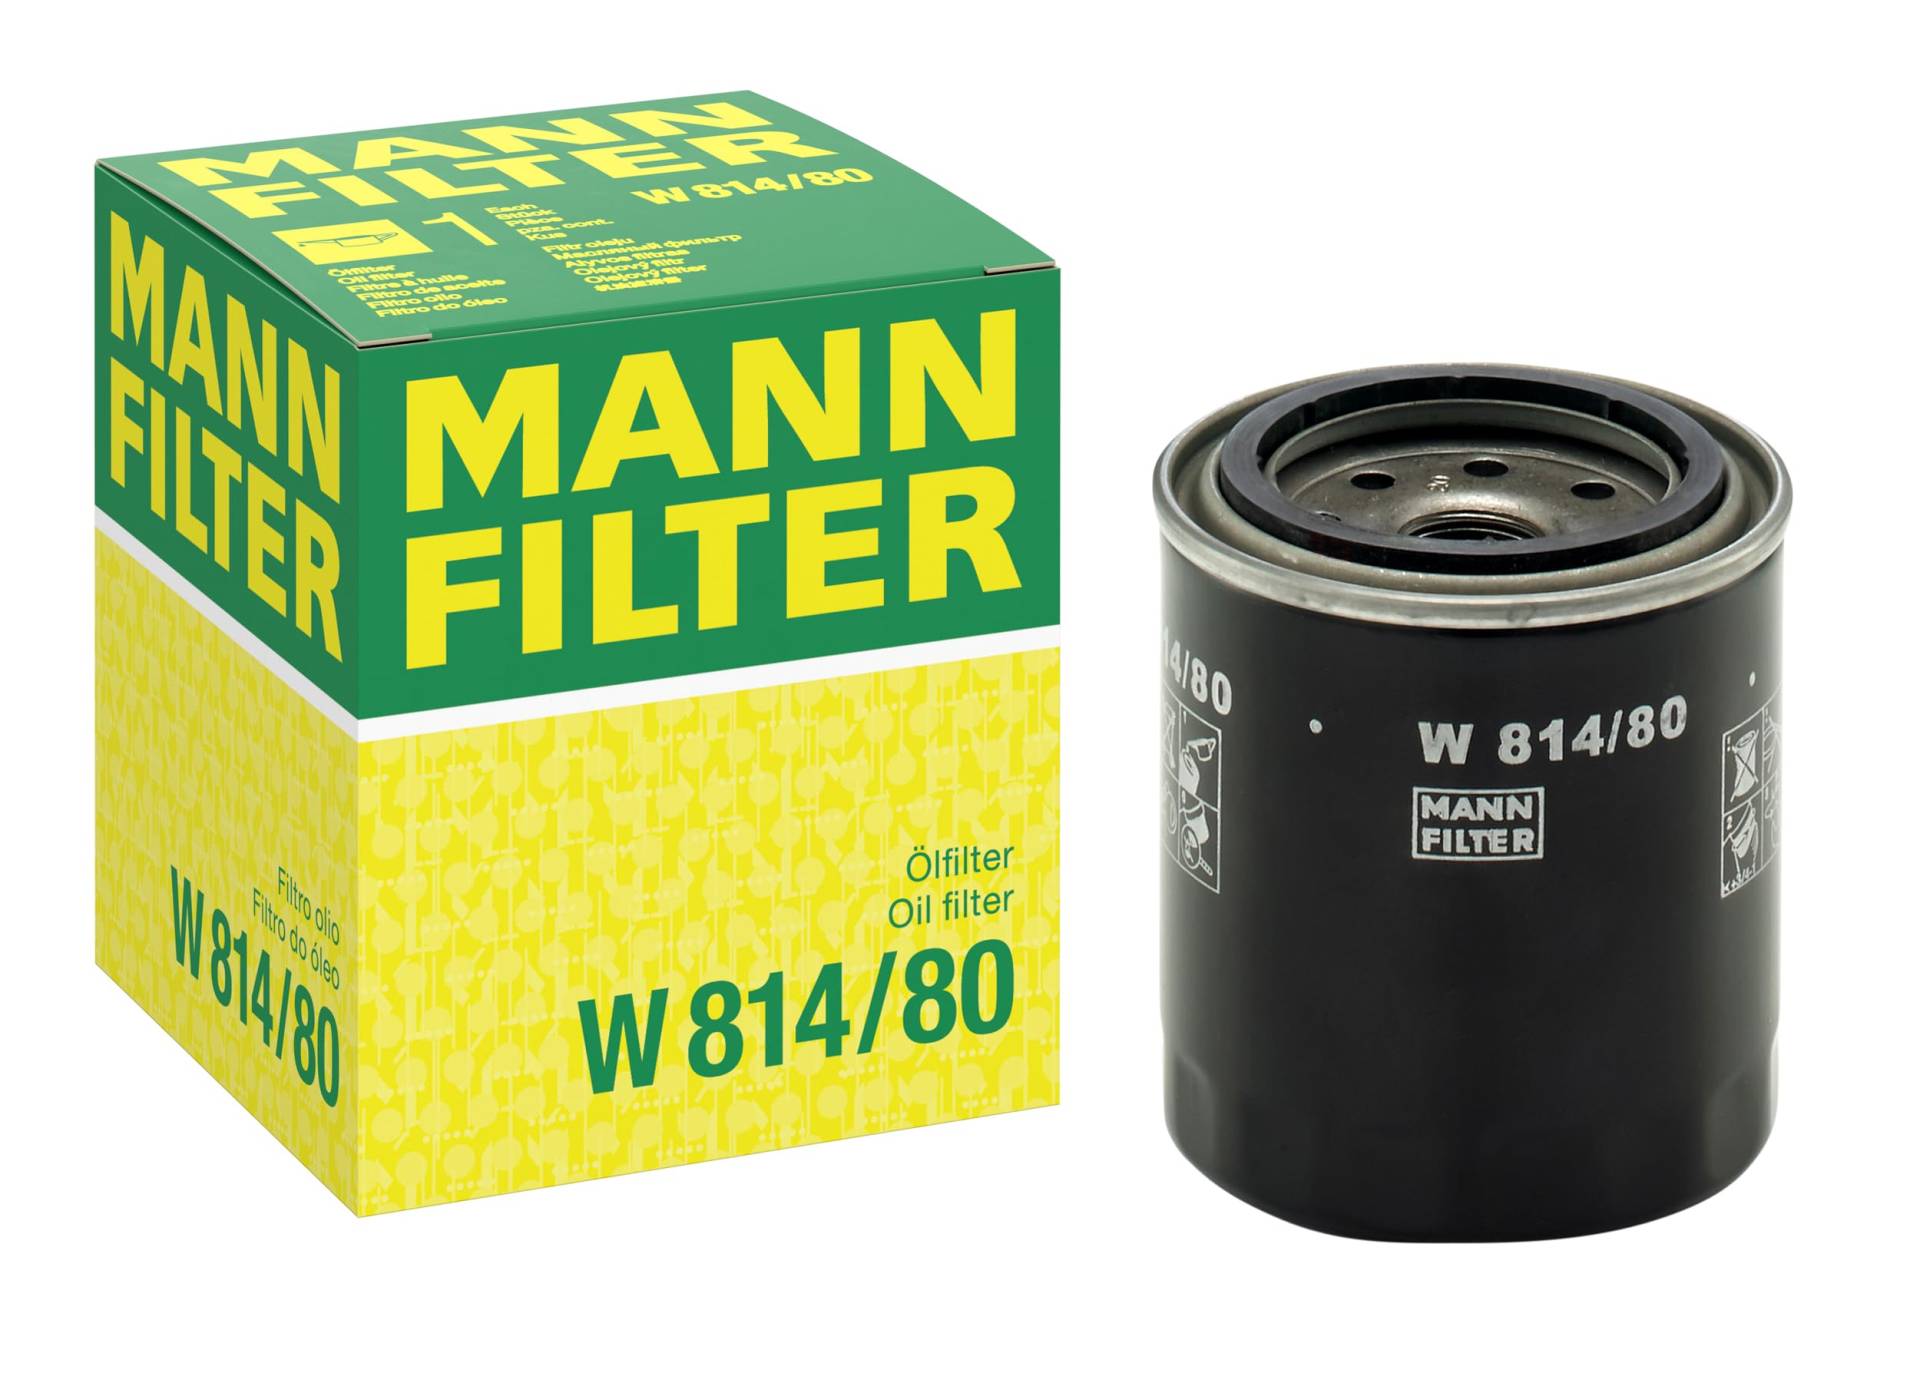 MANN-FILTER W 814/80 Ölfilter – Für PKW und Nutzfahrzeuge von MANN-FILTER